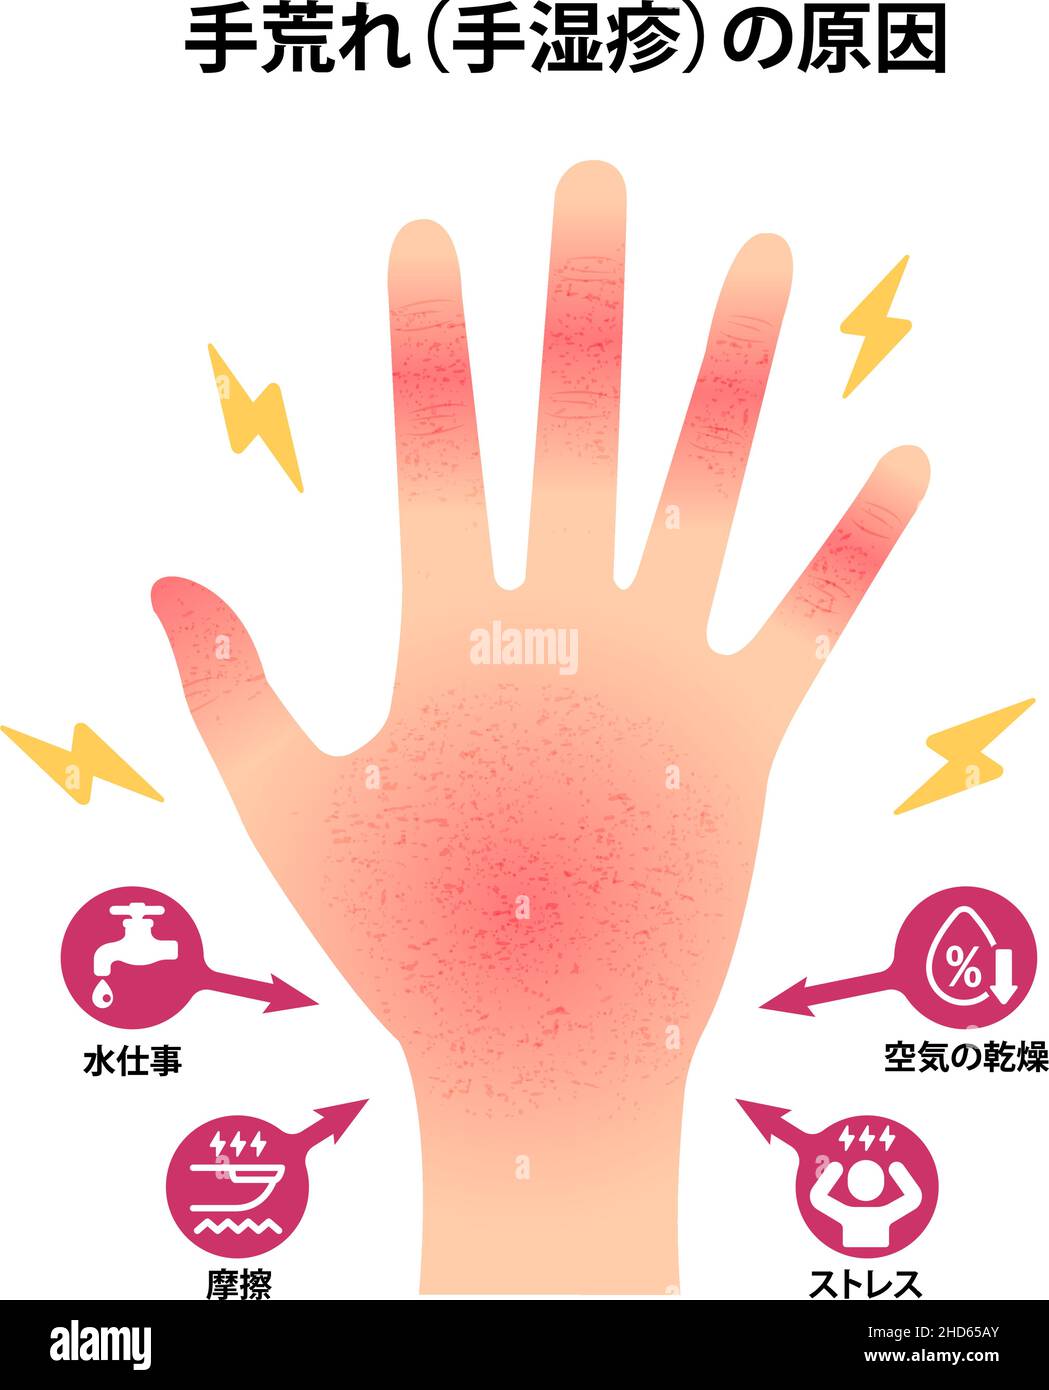 Ursachen für trockene und raue Hände ( rissige Hände ) Vektordarstellung Stock Vektor